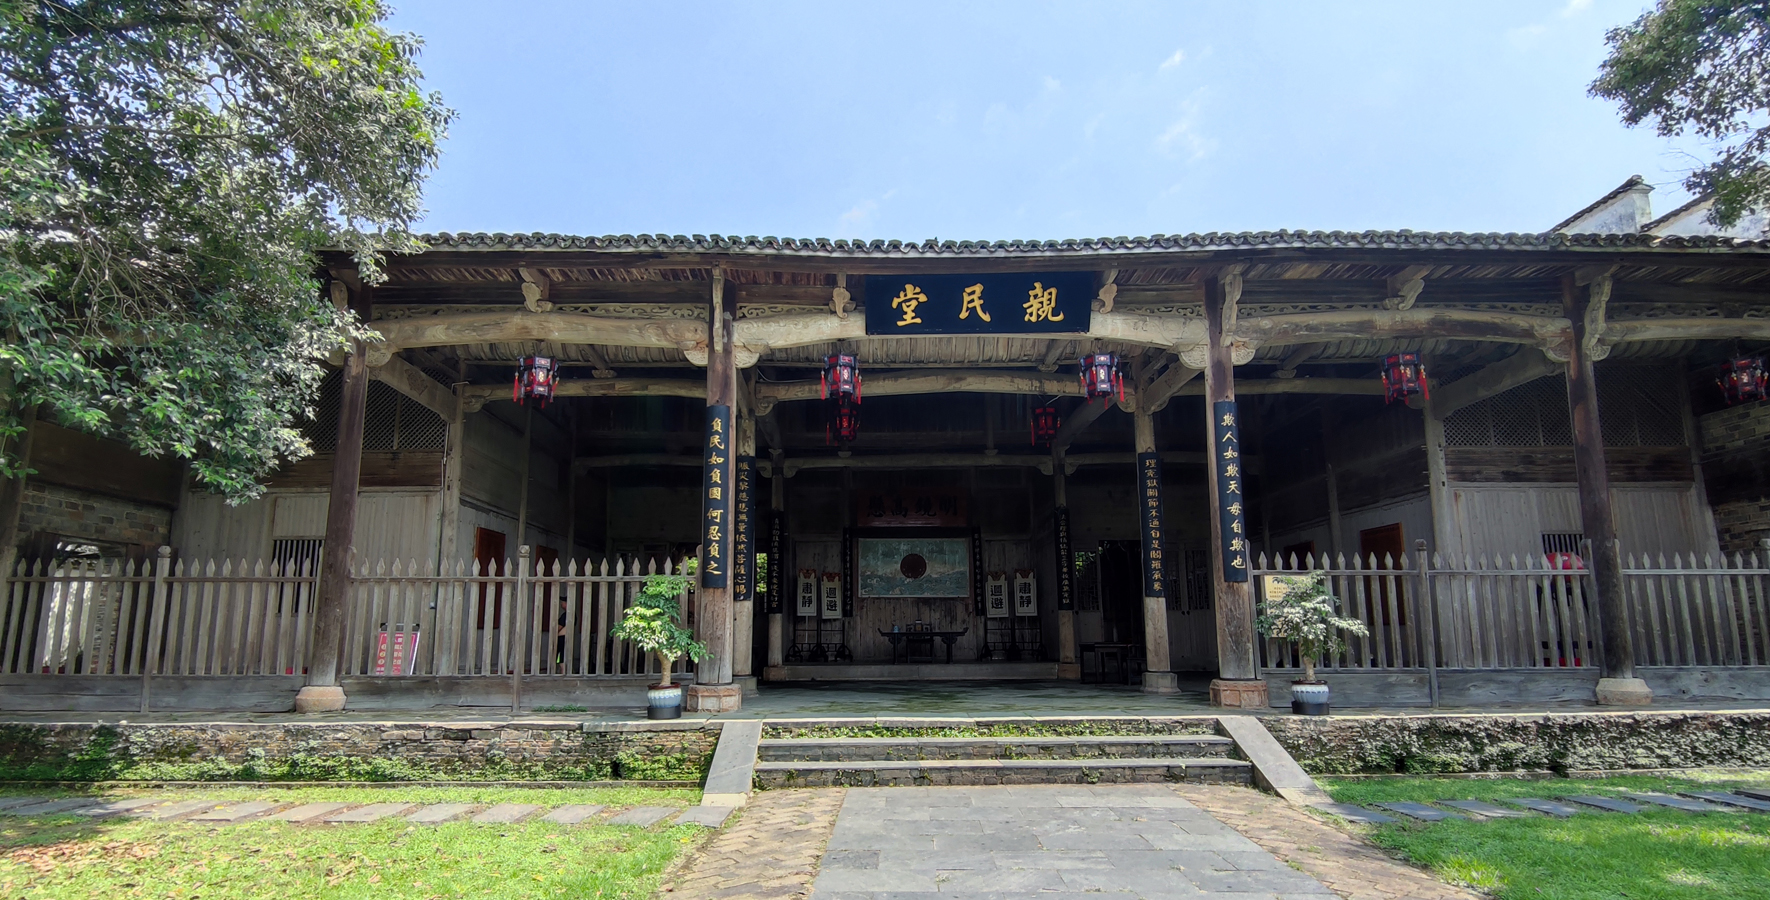 Oficina del Gobierno del antiguo Condado de Jingdezhen